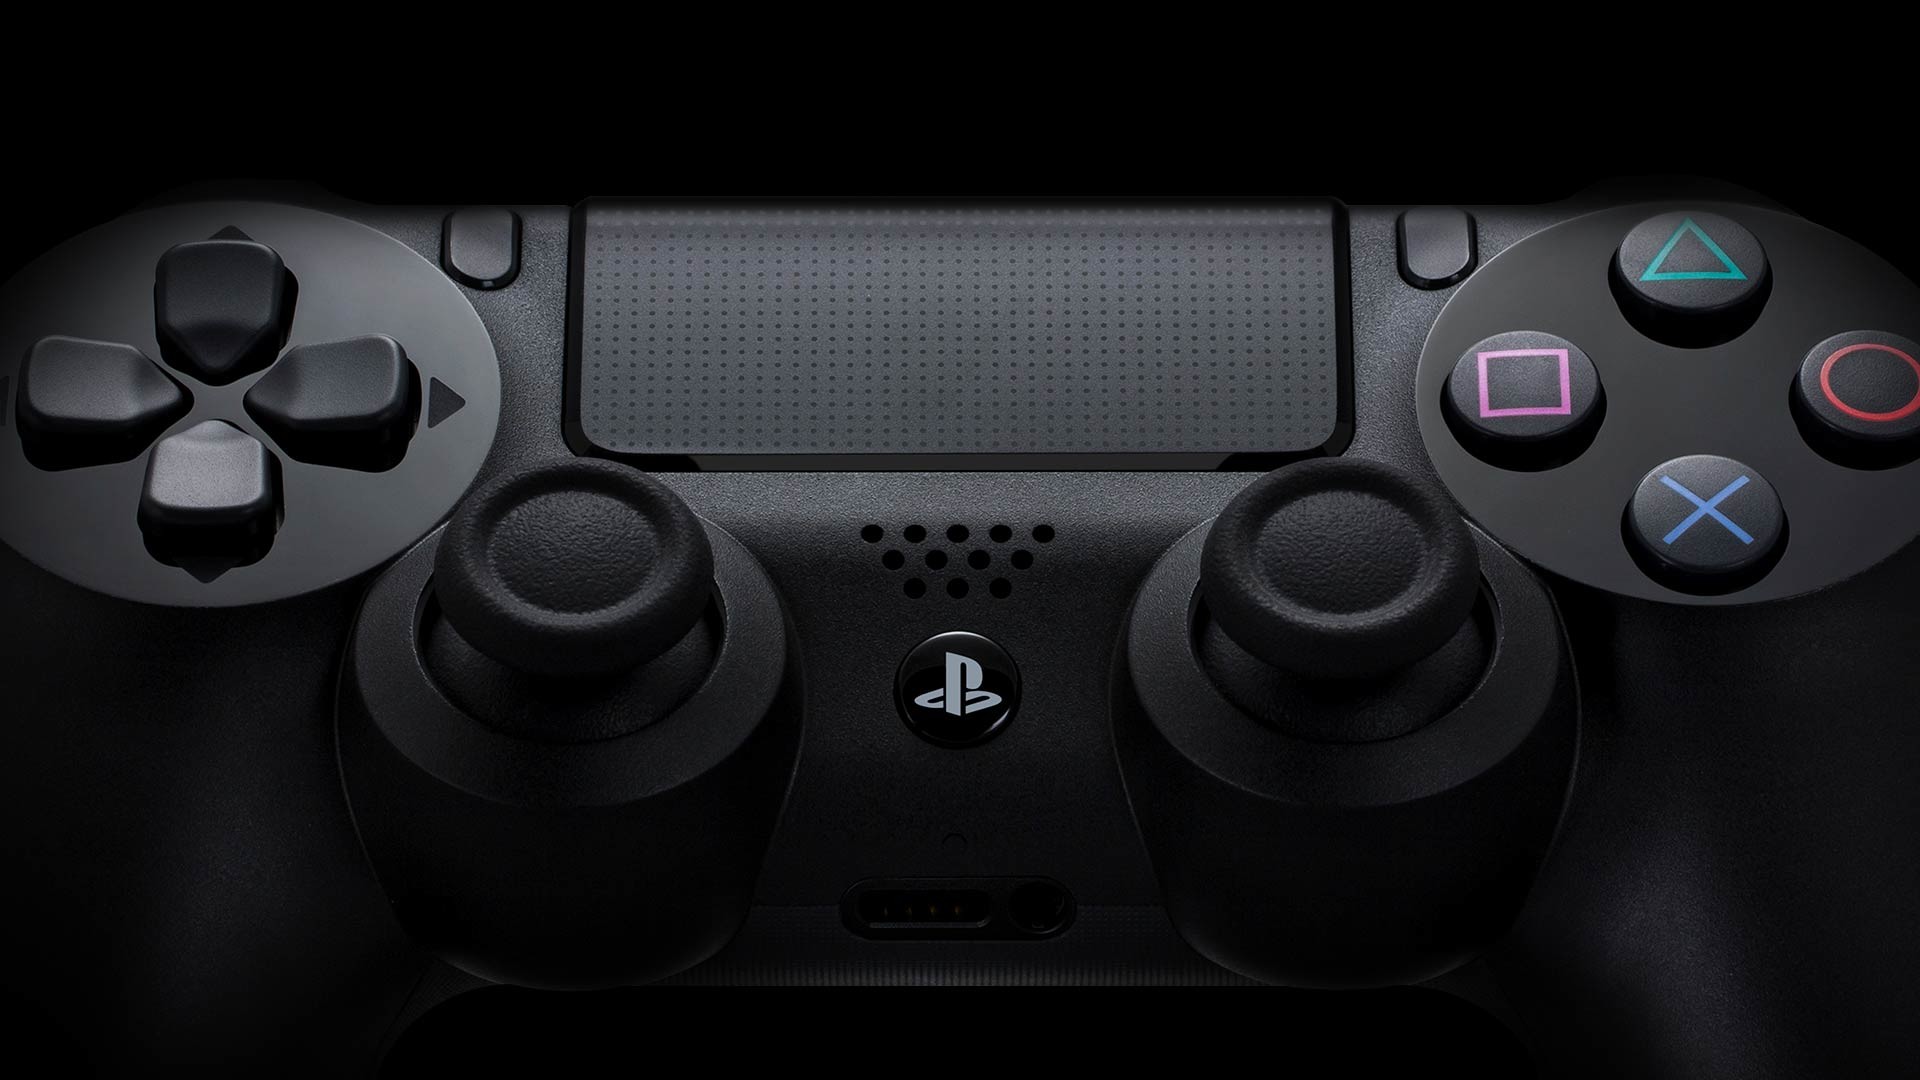 Sony prawdopodobnie rezygnuje z produkcji PS4. Wiemy, które modele znikną pierwsze